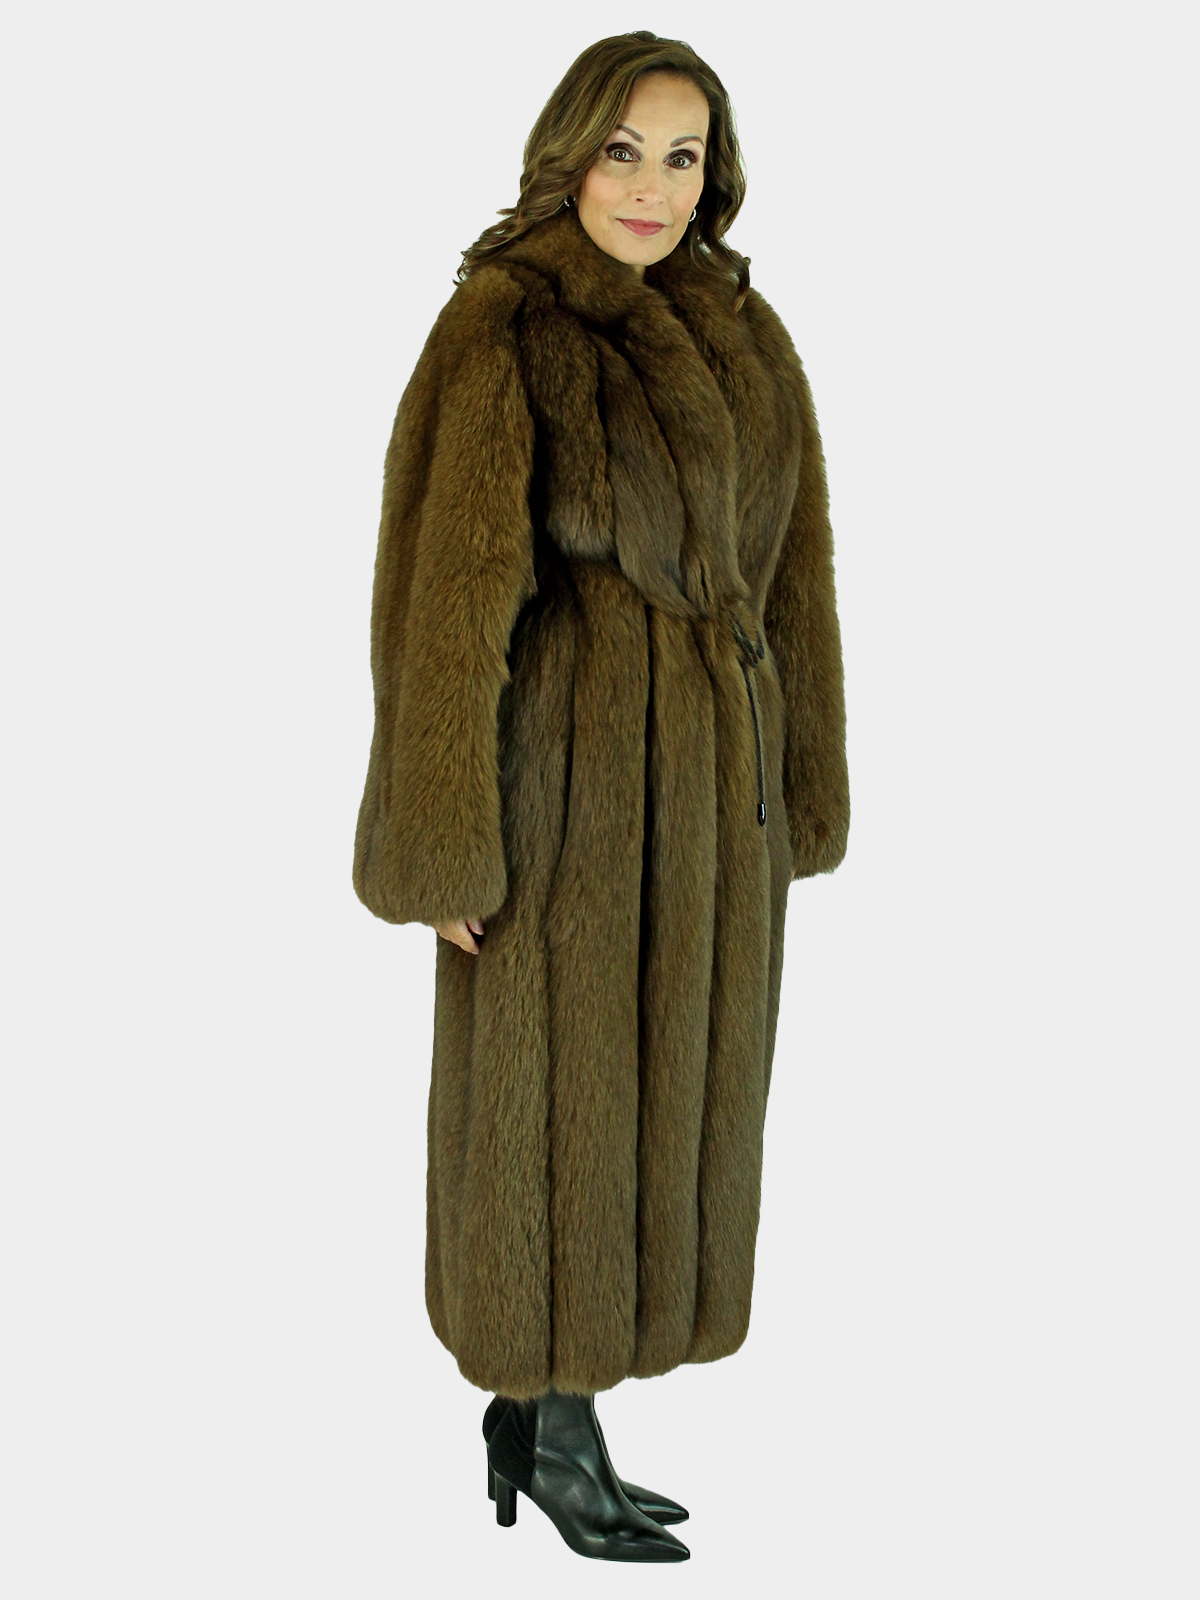 Brown Fox Fur Coat -Women's Fur Coat - XS| Estate Furs